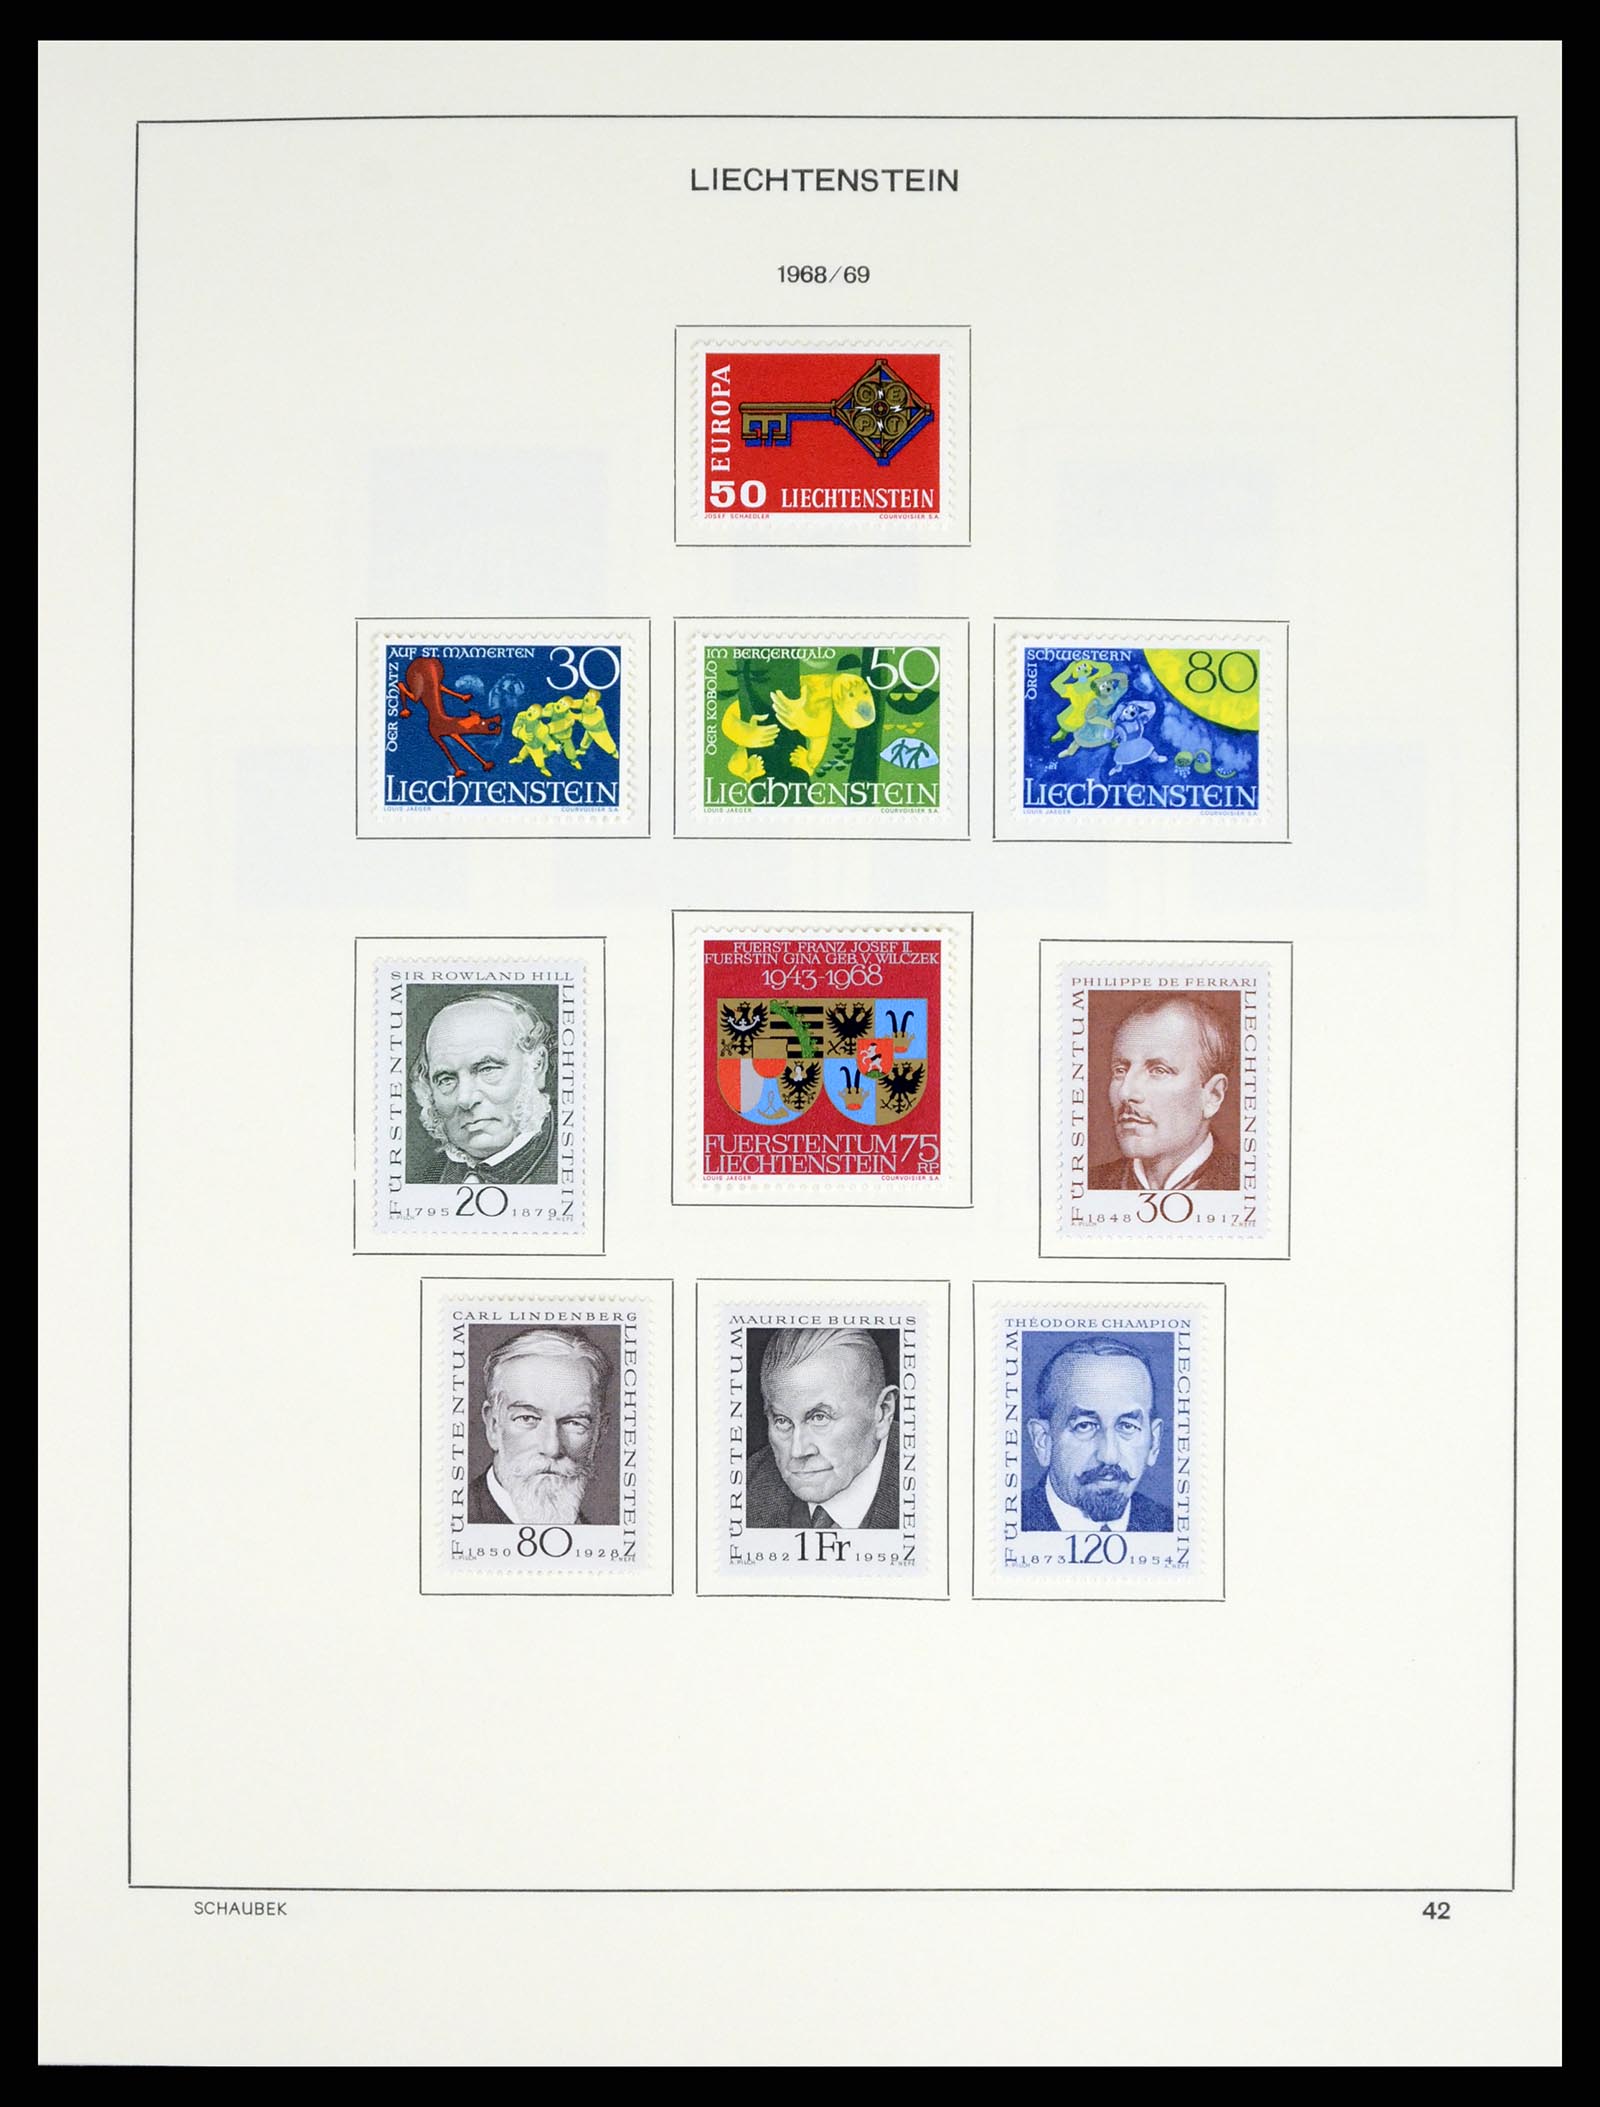 37547 052 - Stamp collection 37547 Liechtenstein 1912-2011.